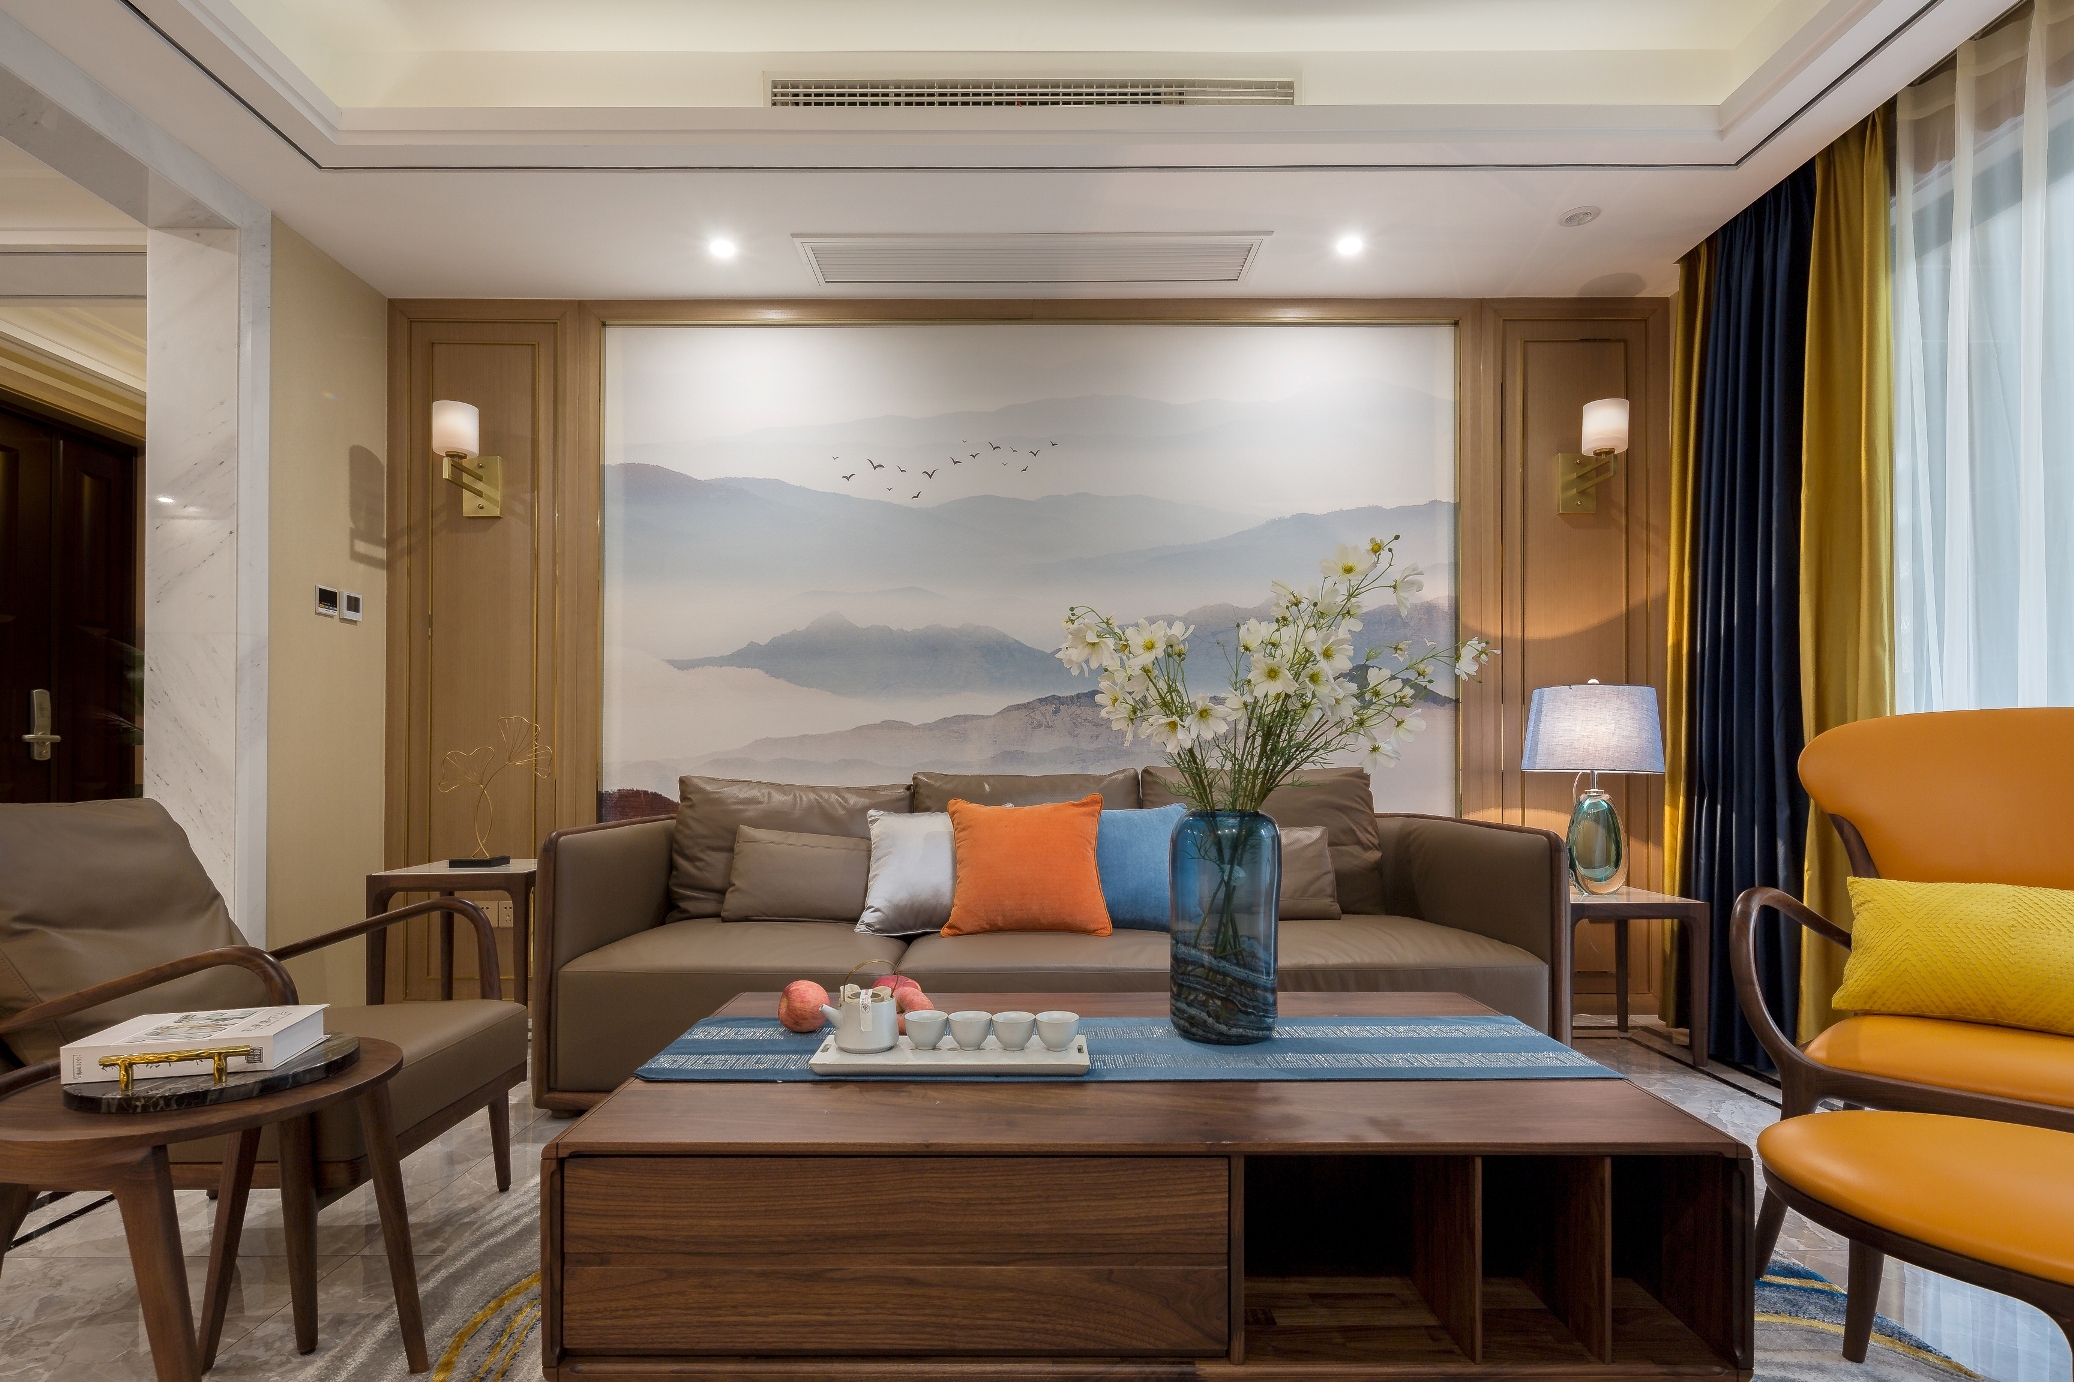 中式客厅沙发背景墙壁画装修效果图 – 设计本装修效果图